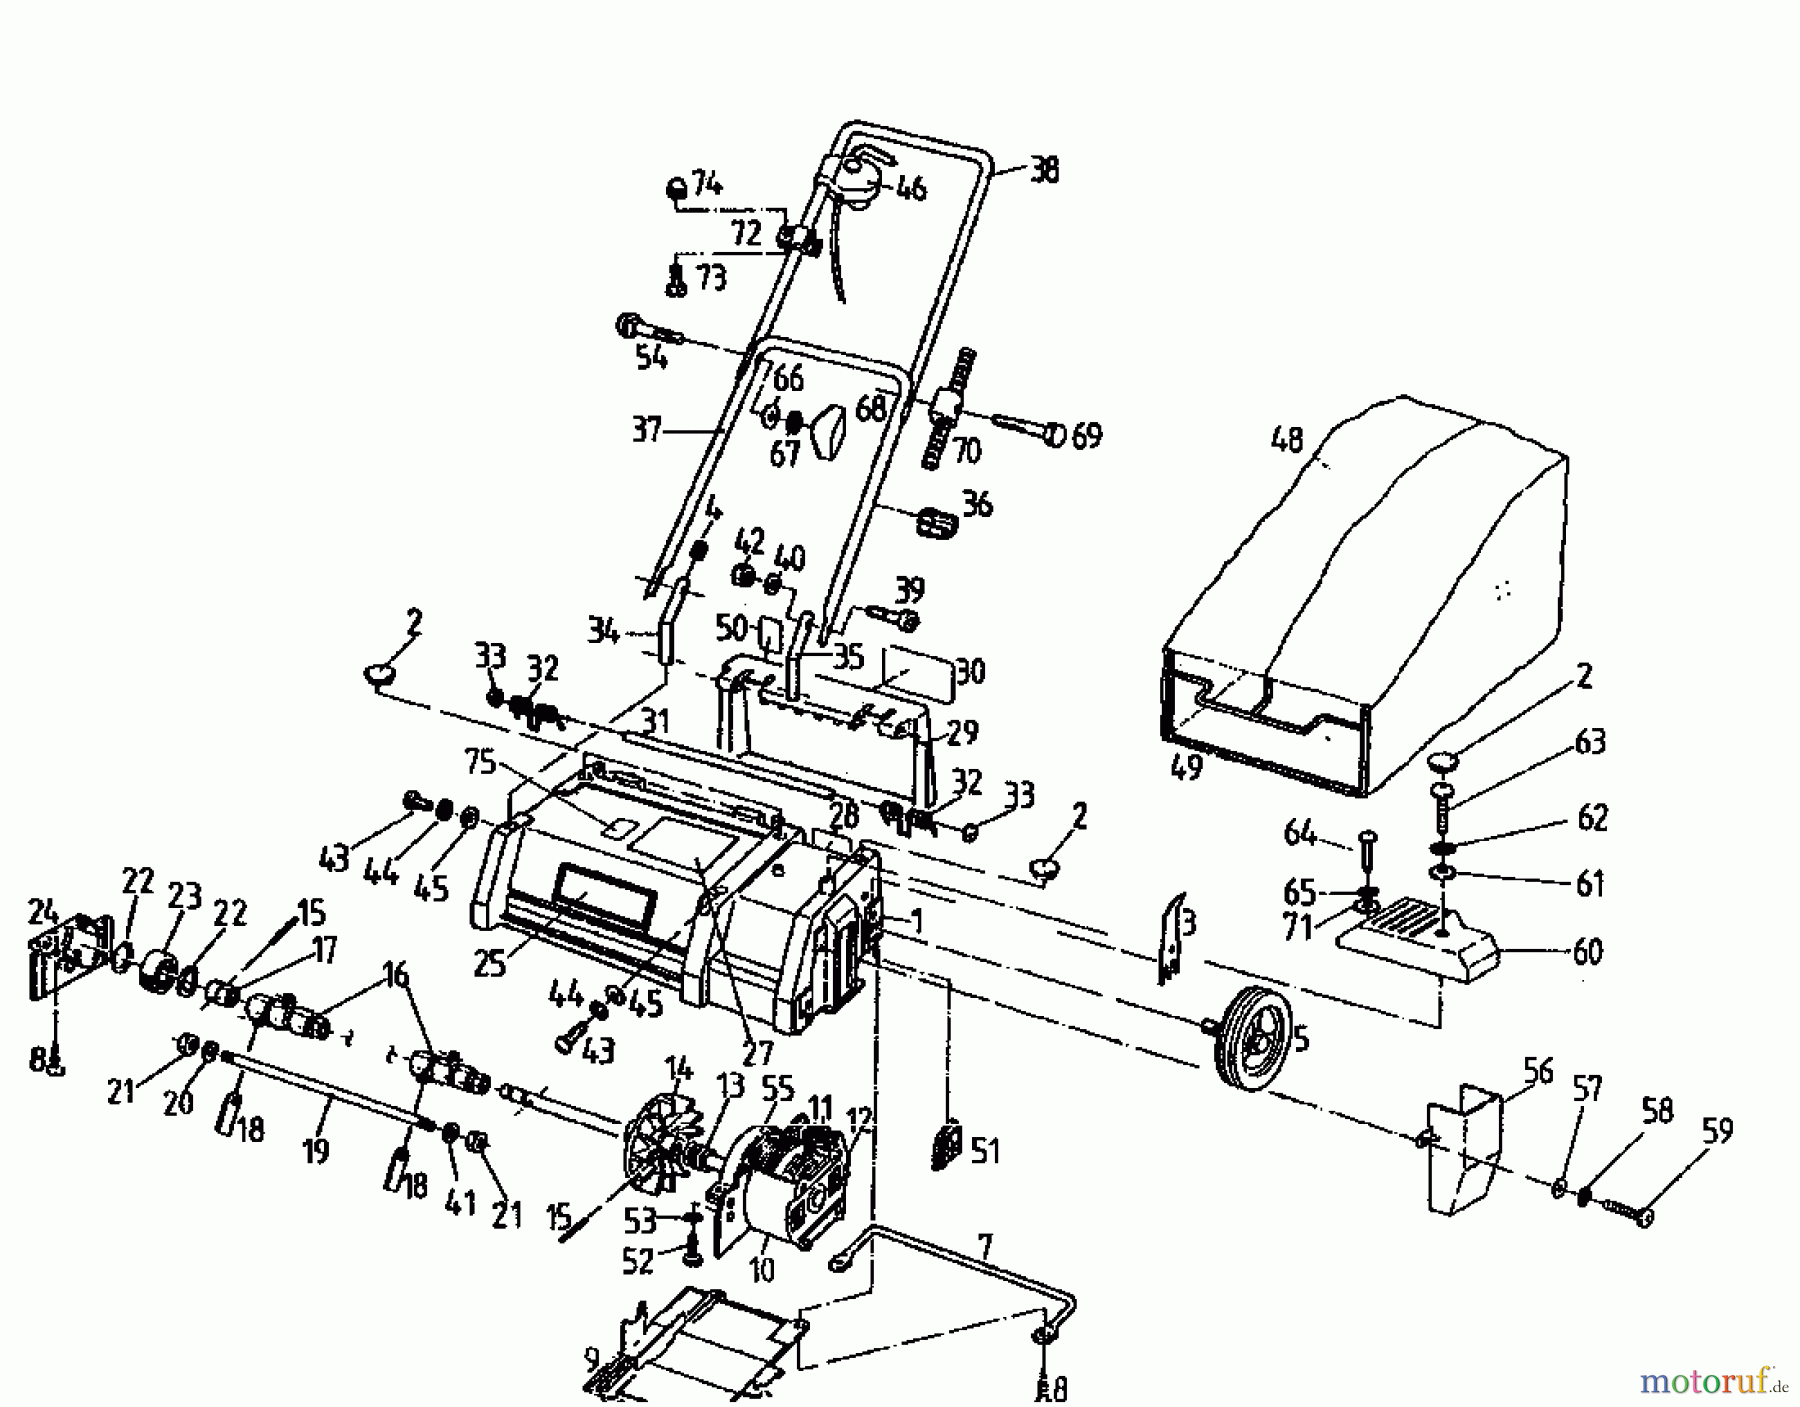  Diana Scarificateur électrique 132 VE 02801.06  (1995) Machine de base